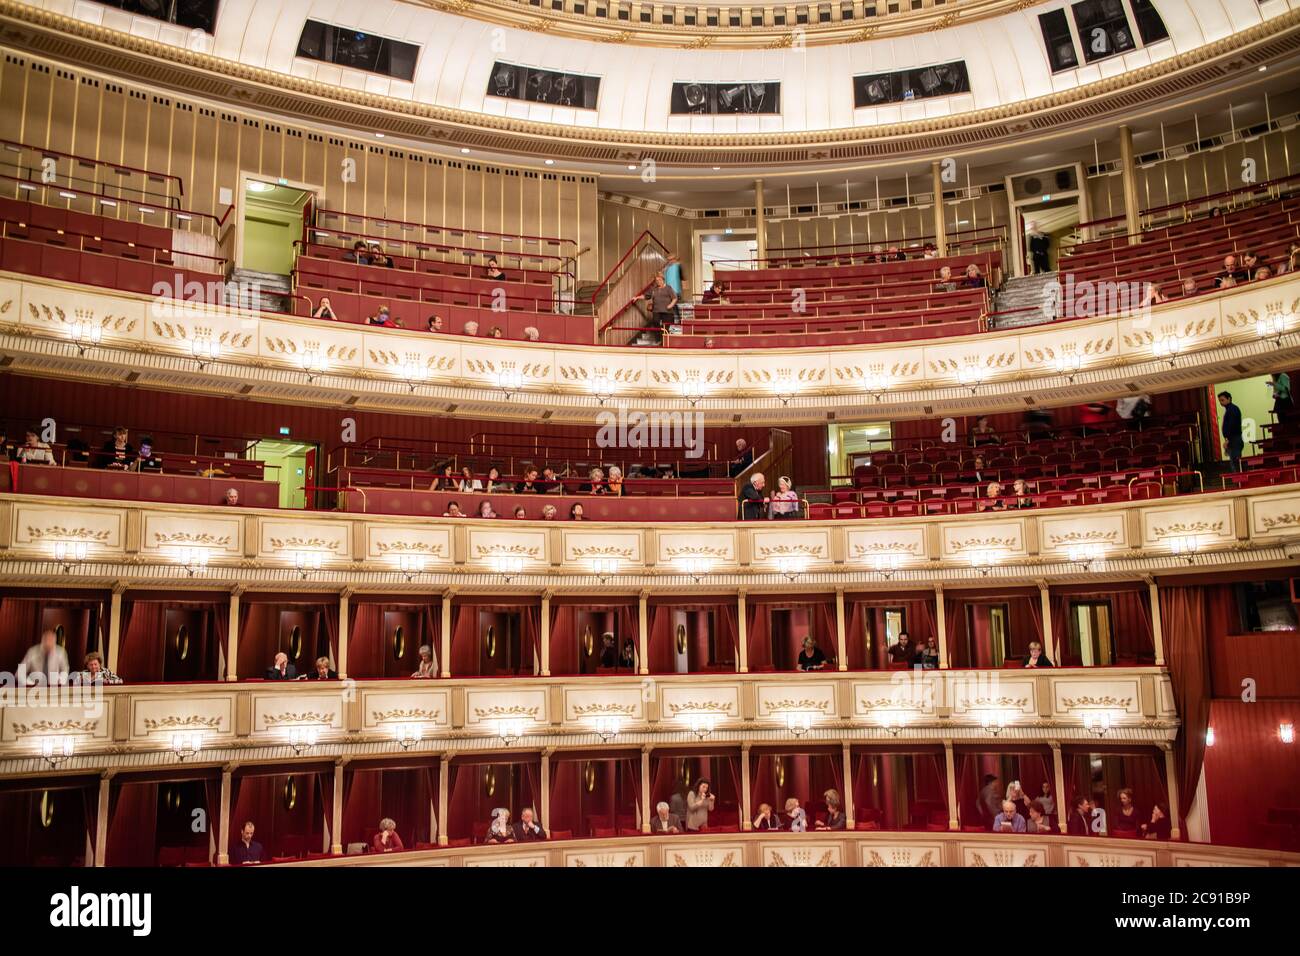 Intérieur de l'auditorium de l'Opéra national de Vienne avec le public. Banque D'Images